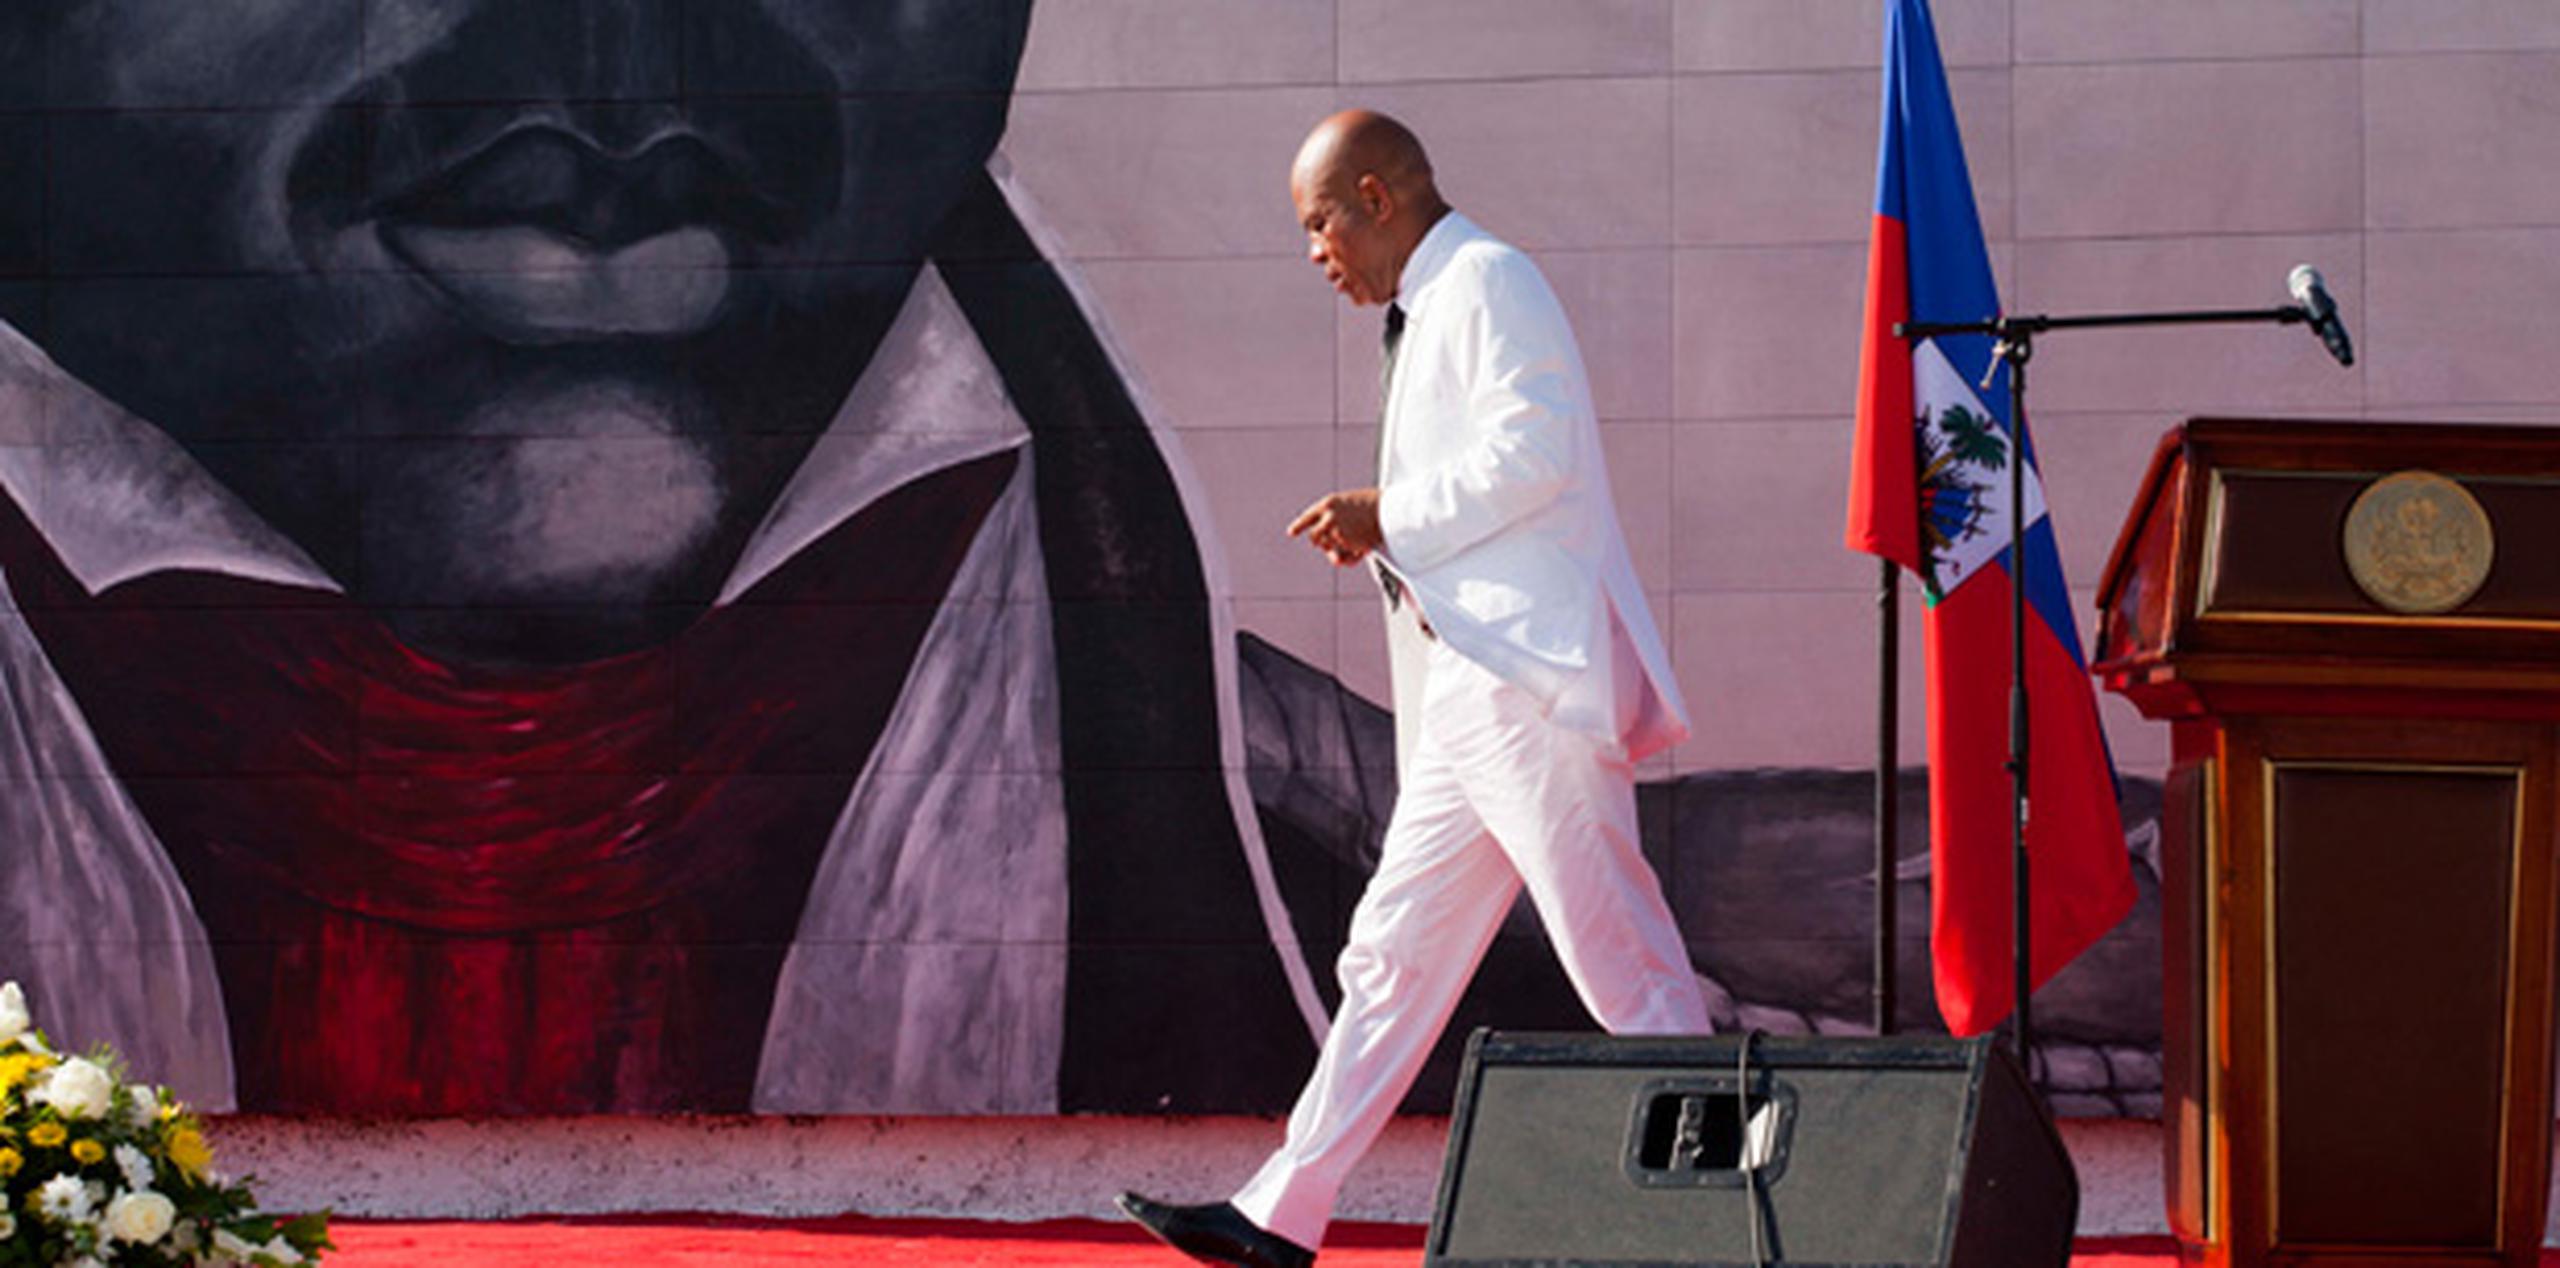 No es la primera vez que Martelly recibe críticas por su lenguaje obsceno durante su mandato. (AP)